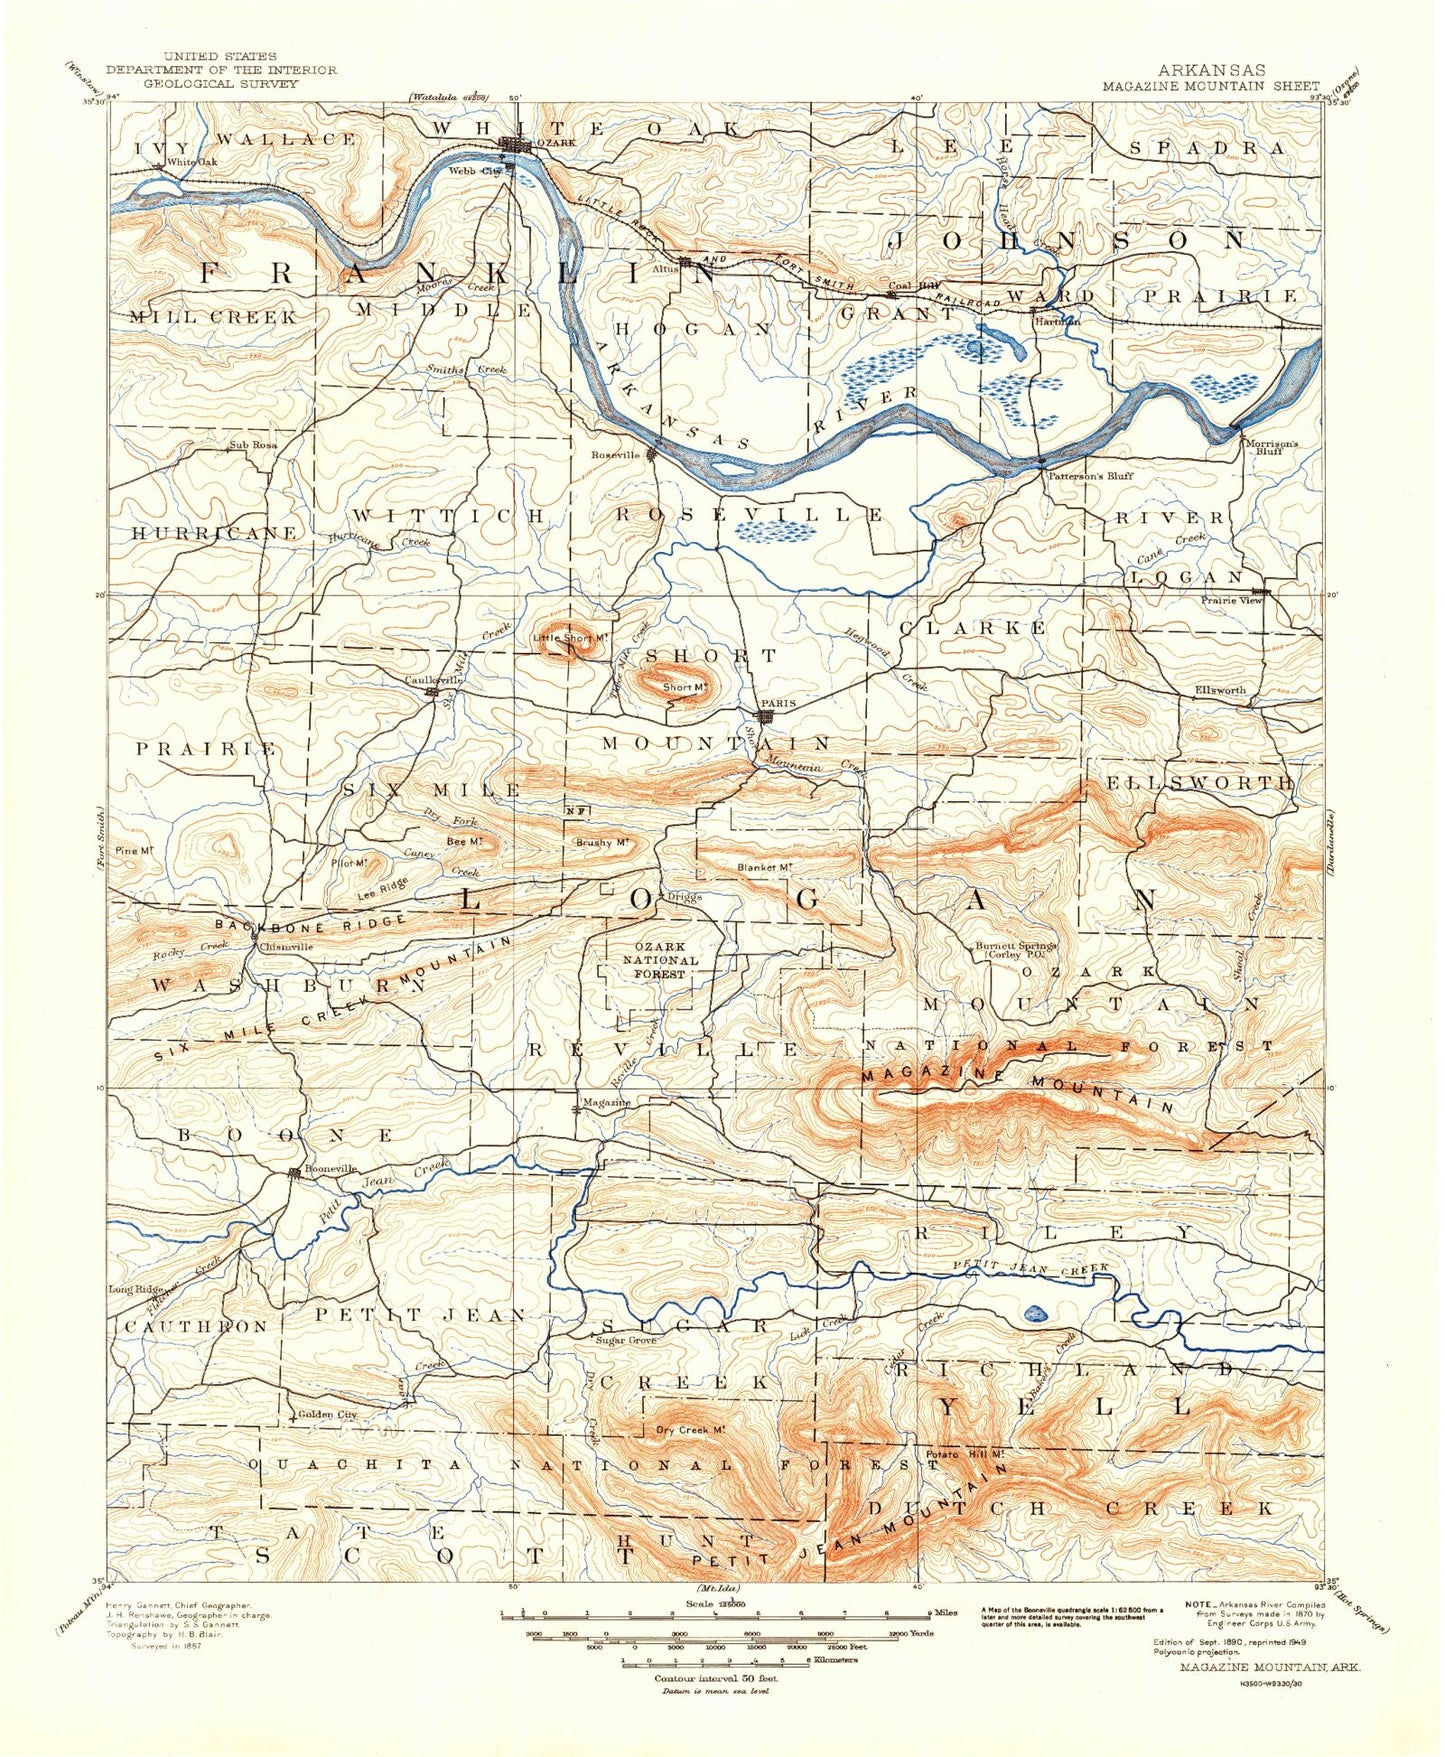 Historic 1890 Magazine Mountain Arkansas 30'x30' Topo Map Image